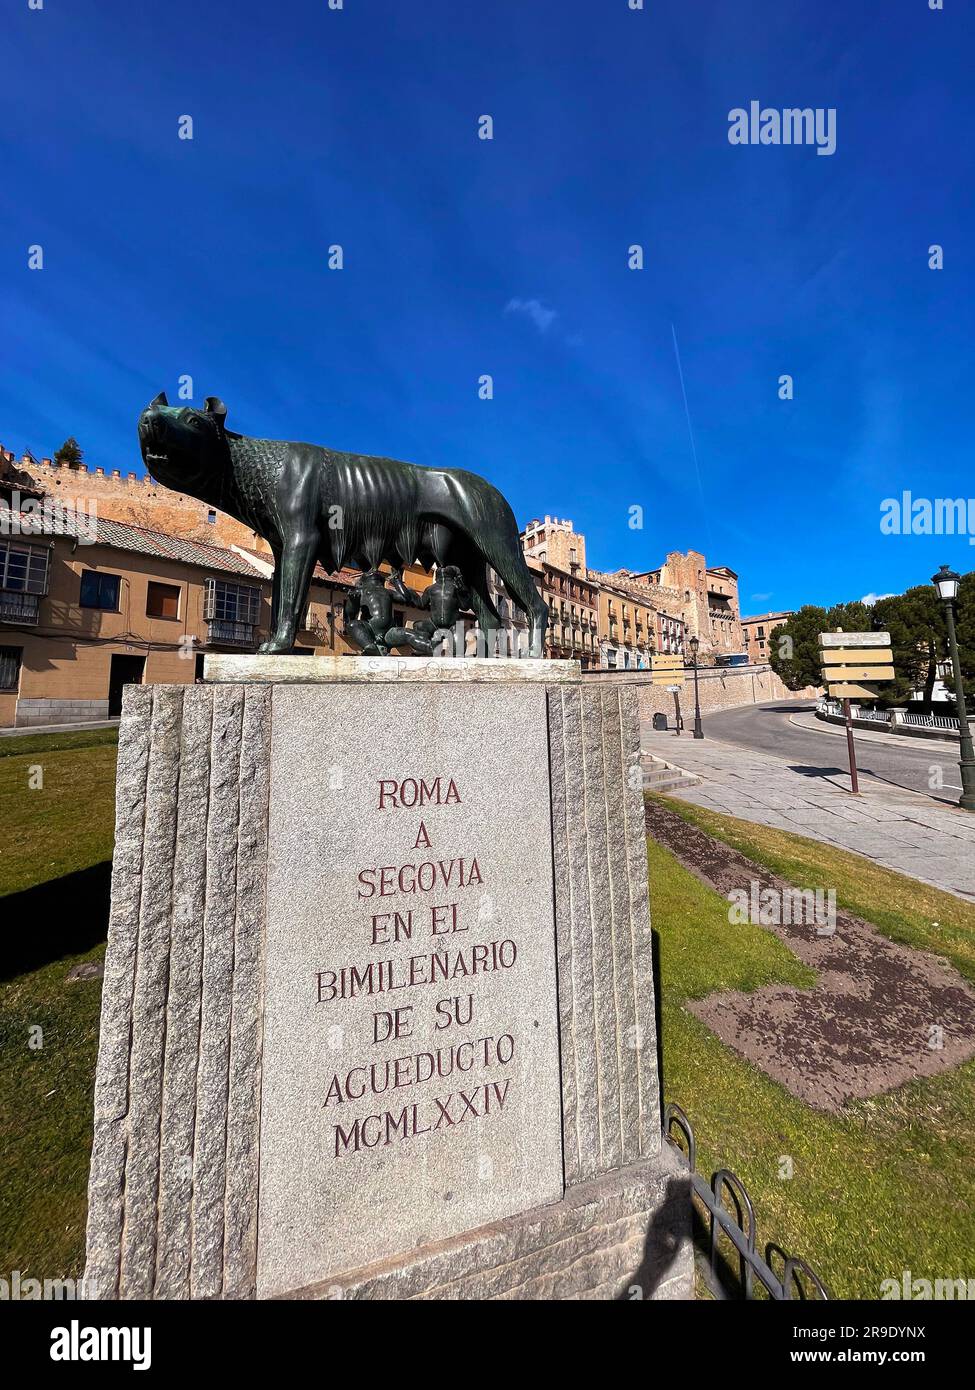 Segovia, Spanien-18. Februar 2022: Die Kapitolinische Wolfsstatue unter dem römischen Aquädukt in Segovia. Die Statue symbolisiert Rom und das Römische Reich. Stockfoto